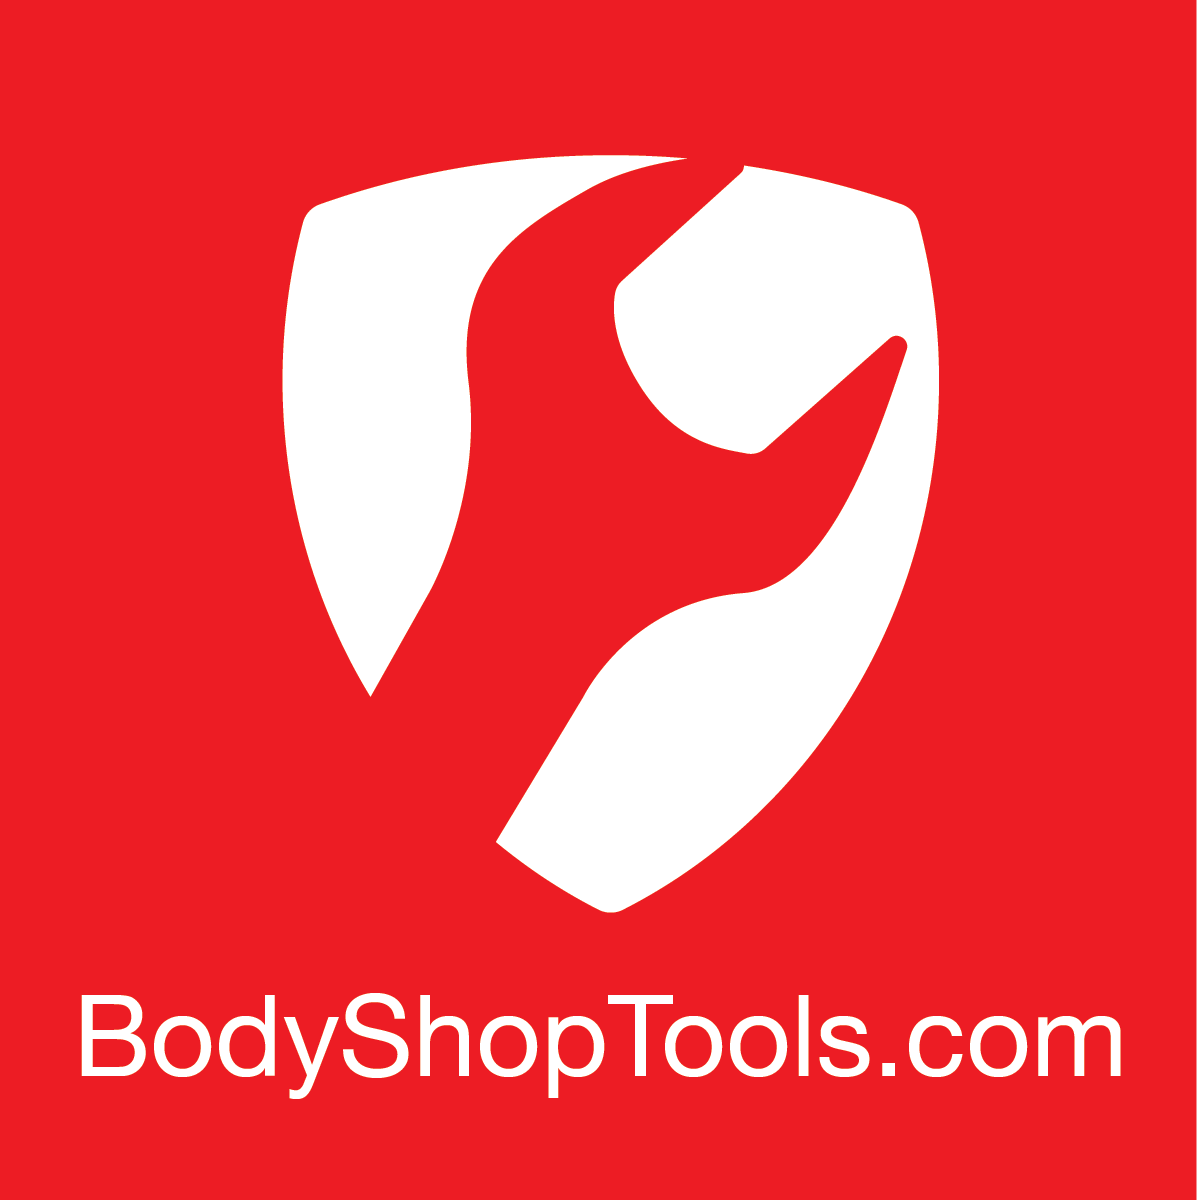 BodyShopTools.com